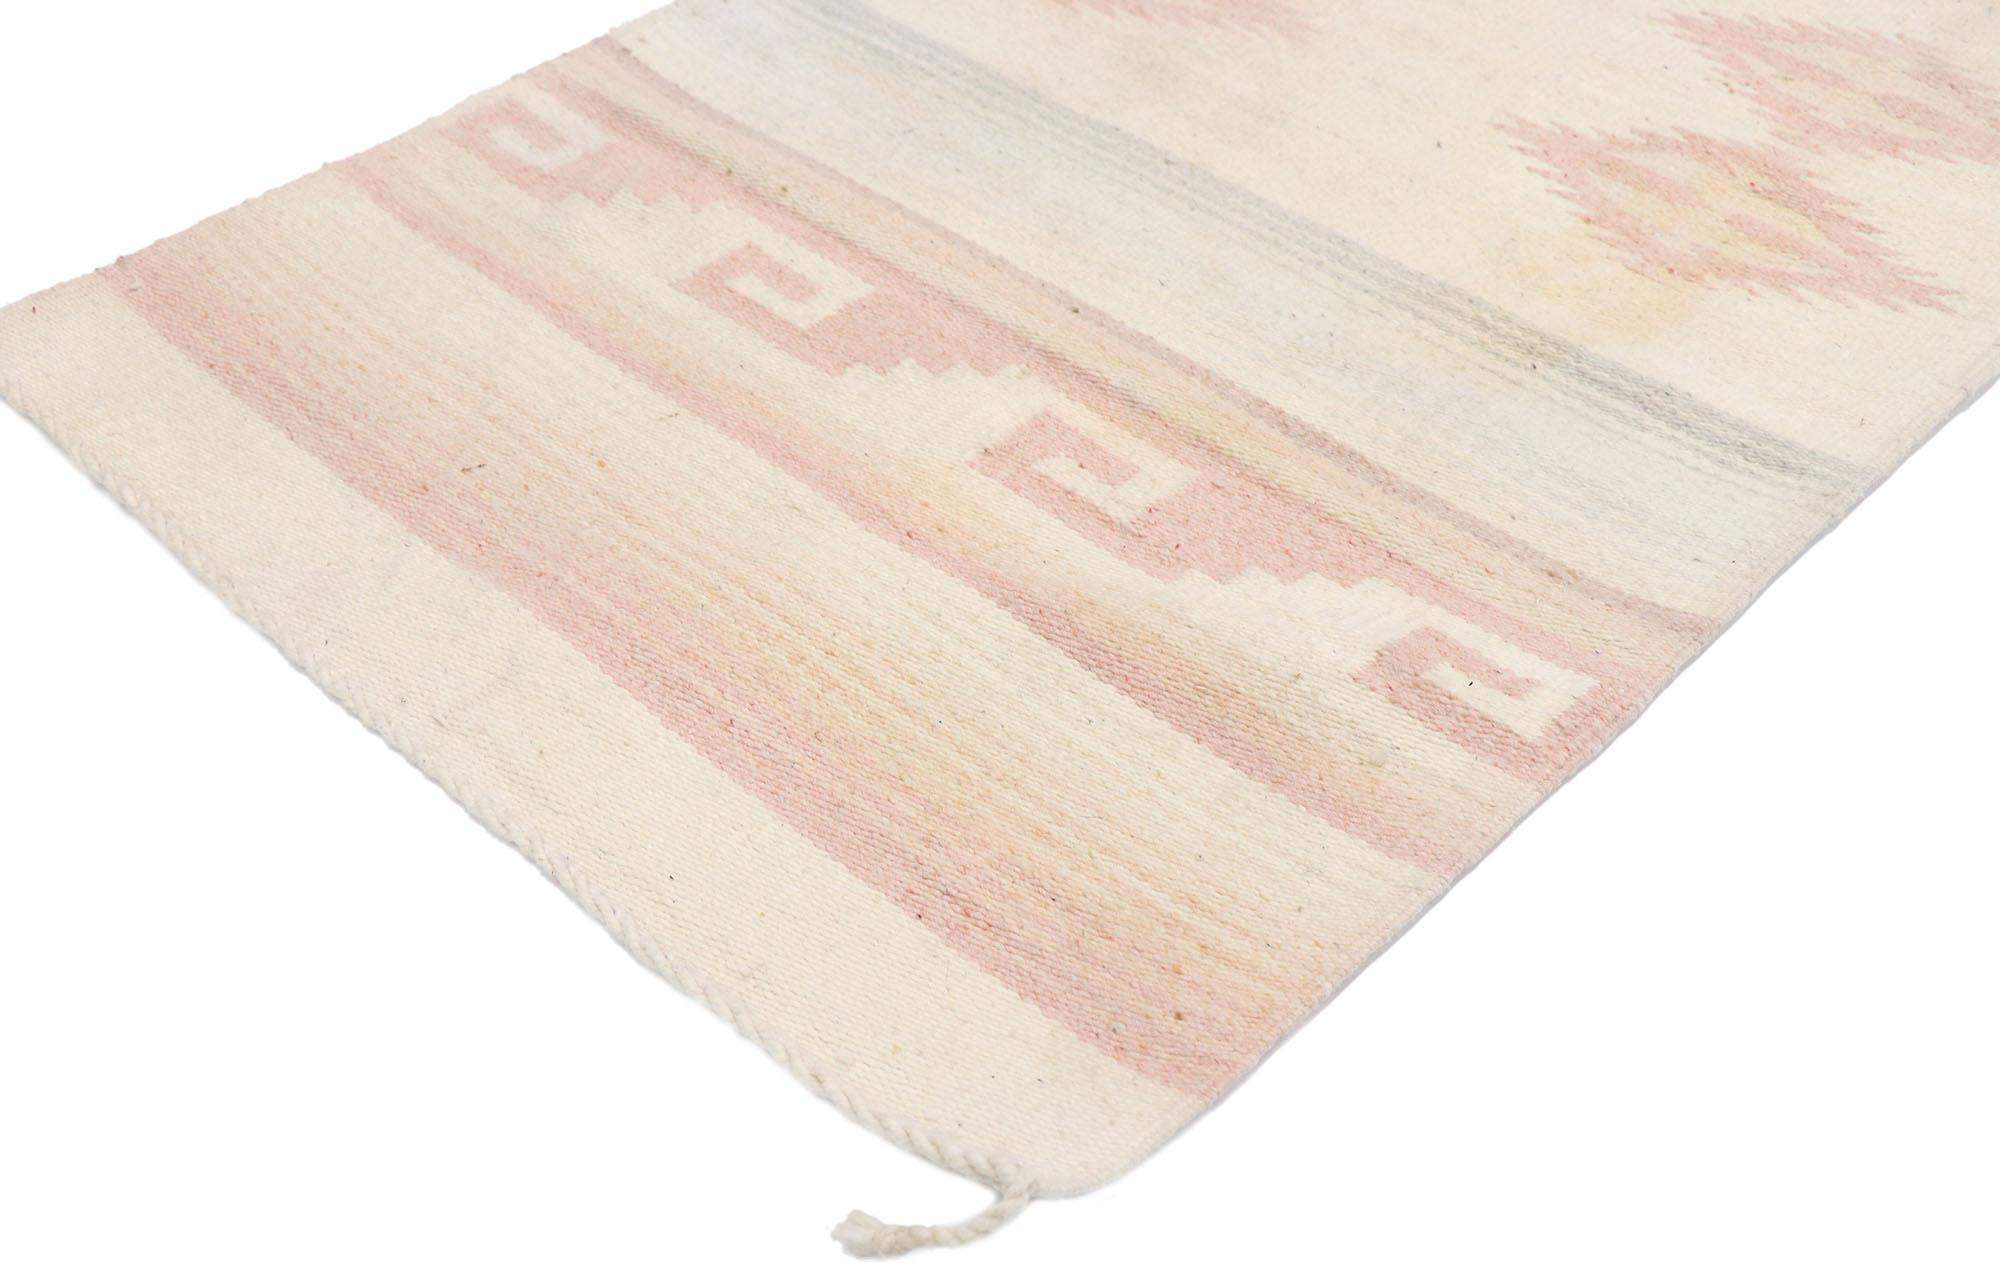 77772 Vintage Navajo Kilim rug with Southwestern Bohemian Style 02'05 x 04'11. Plein d'histoire avec des contes tissés et une beauté sans effort, ce tapis kilim Navajo vintage en laine tissé à la main incarne magnifiquement un style tribal bohème du